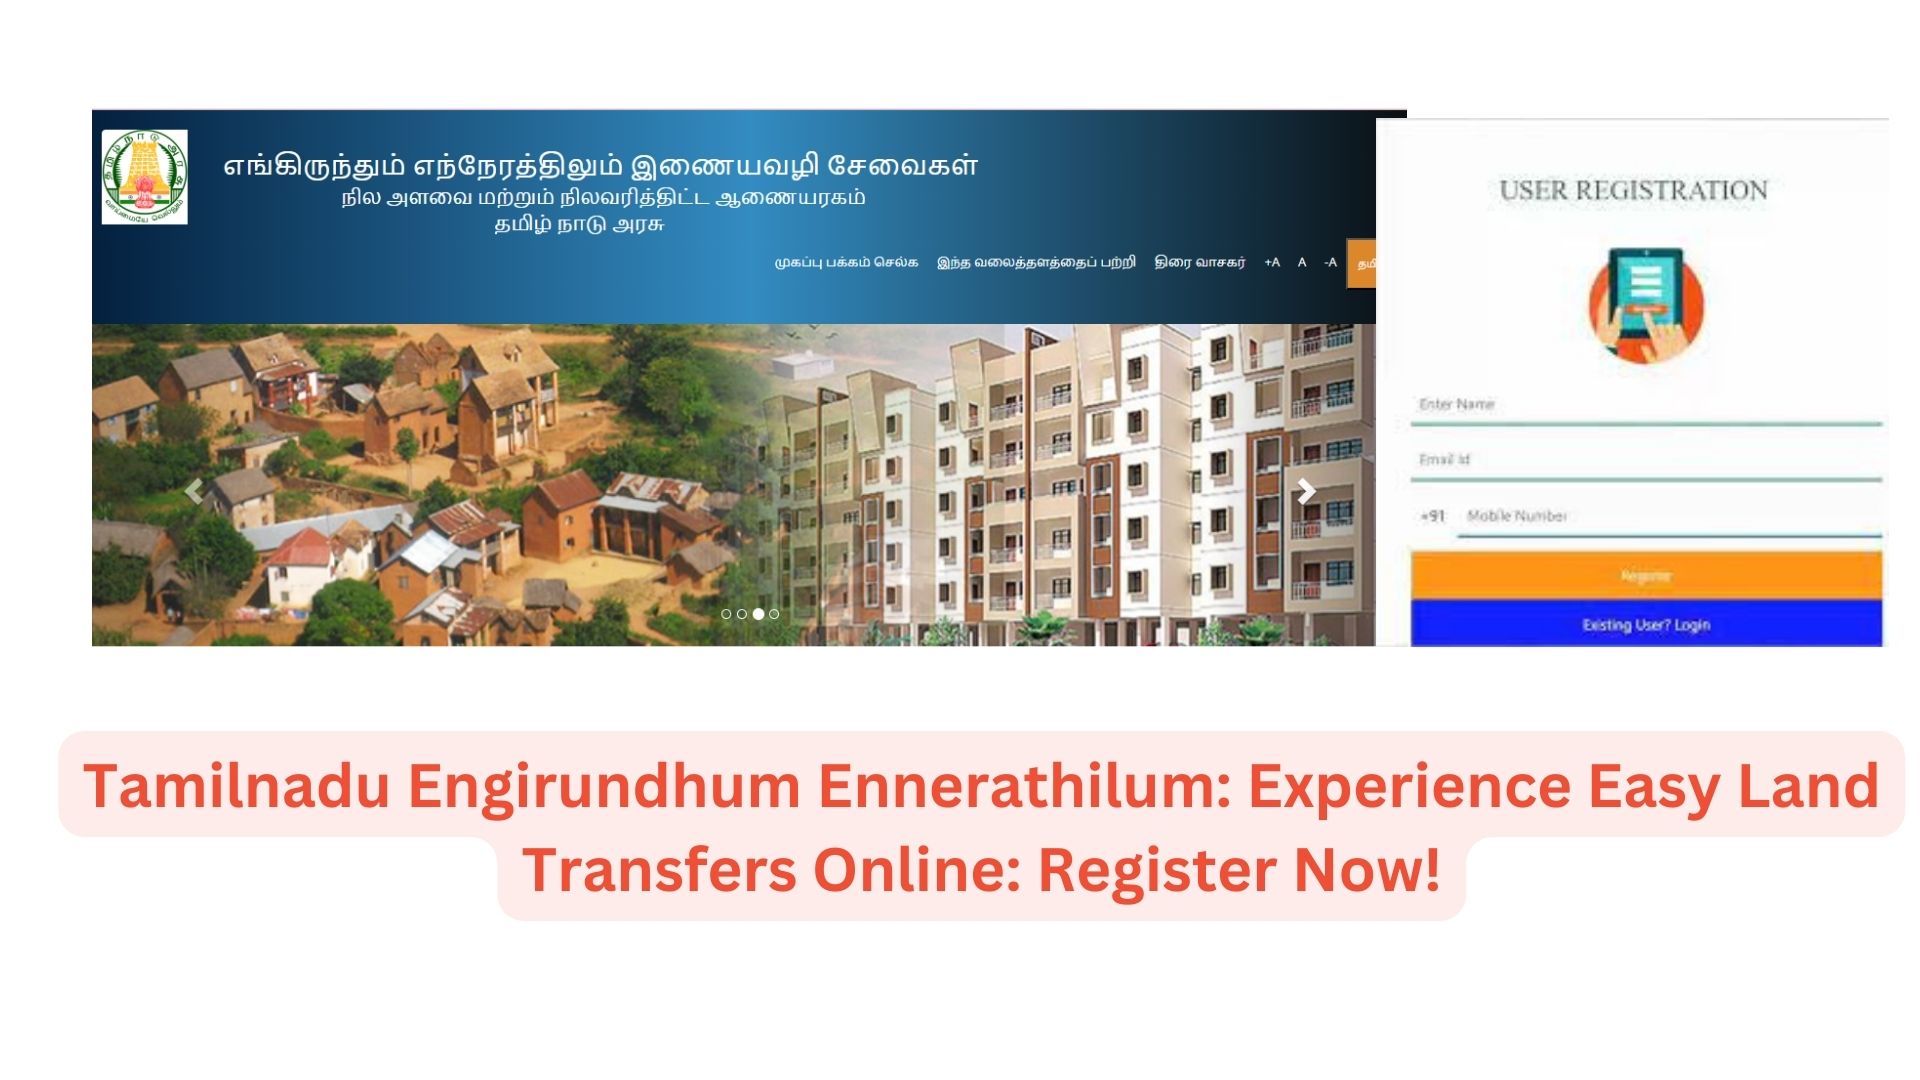 Tamilnadu Engirundhum Ennerathilum: Experience Easy Land Transfers Online: Register Now!